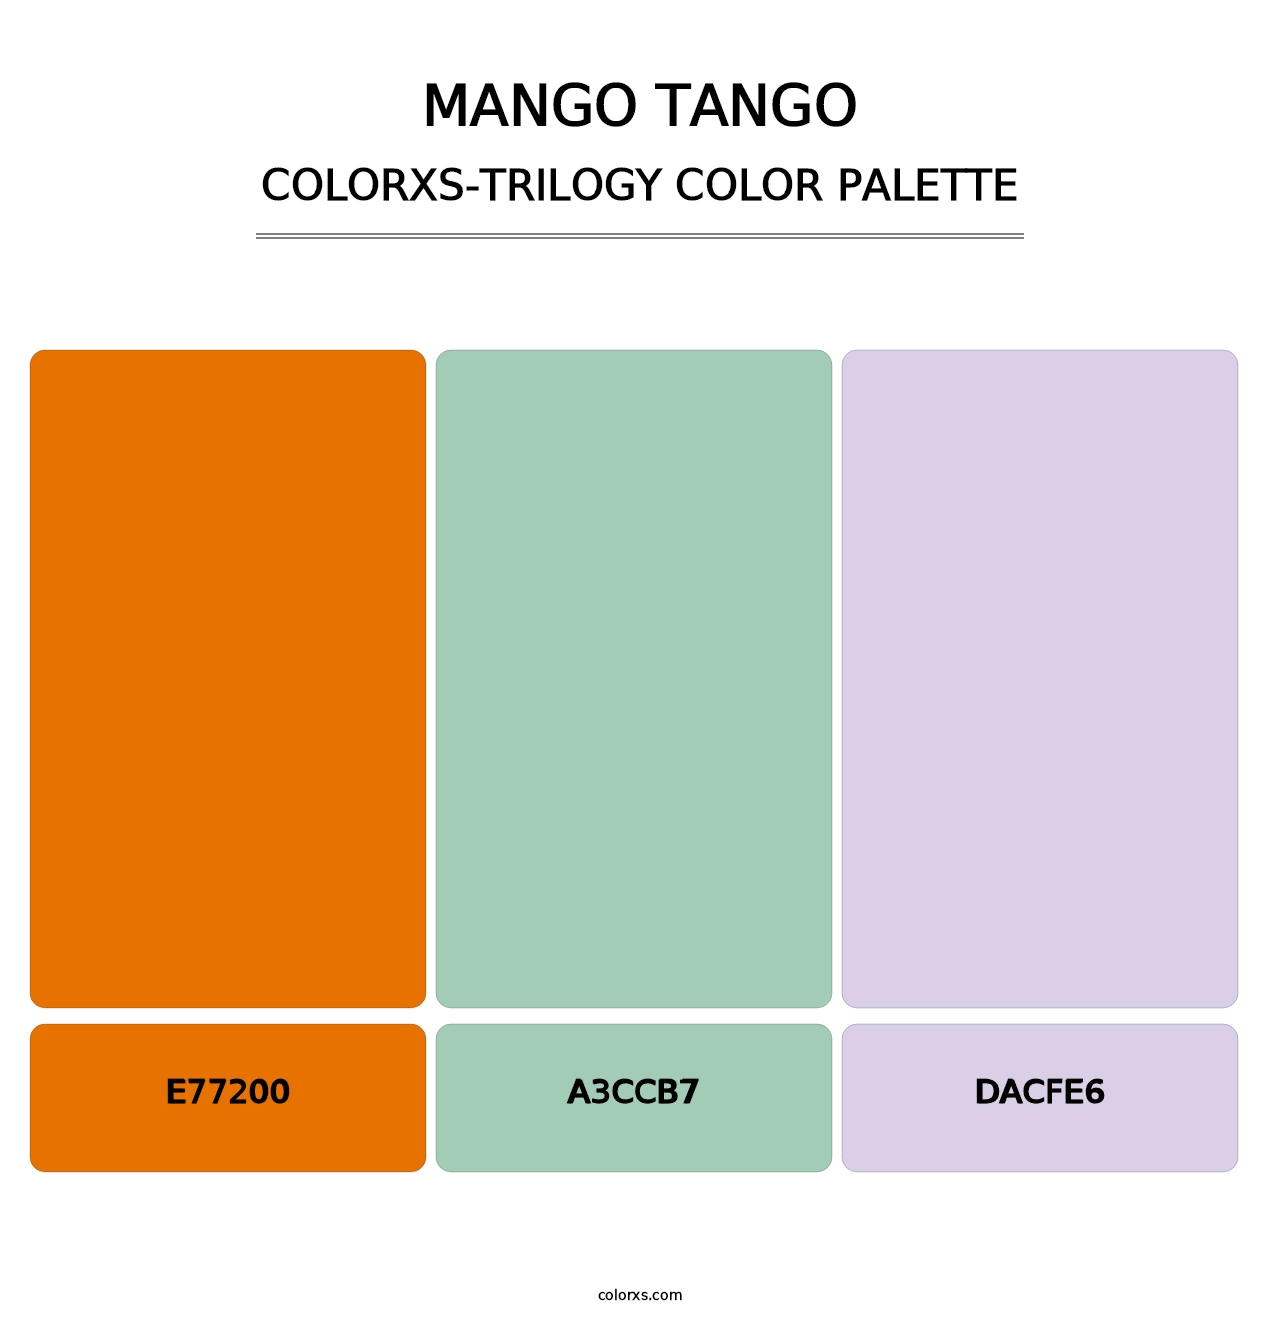 Mango Tango - Colorxs Trilogy Palette